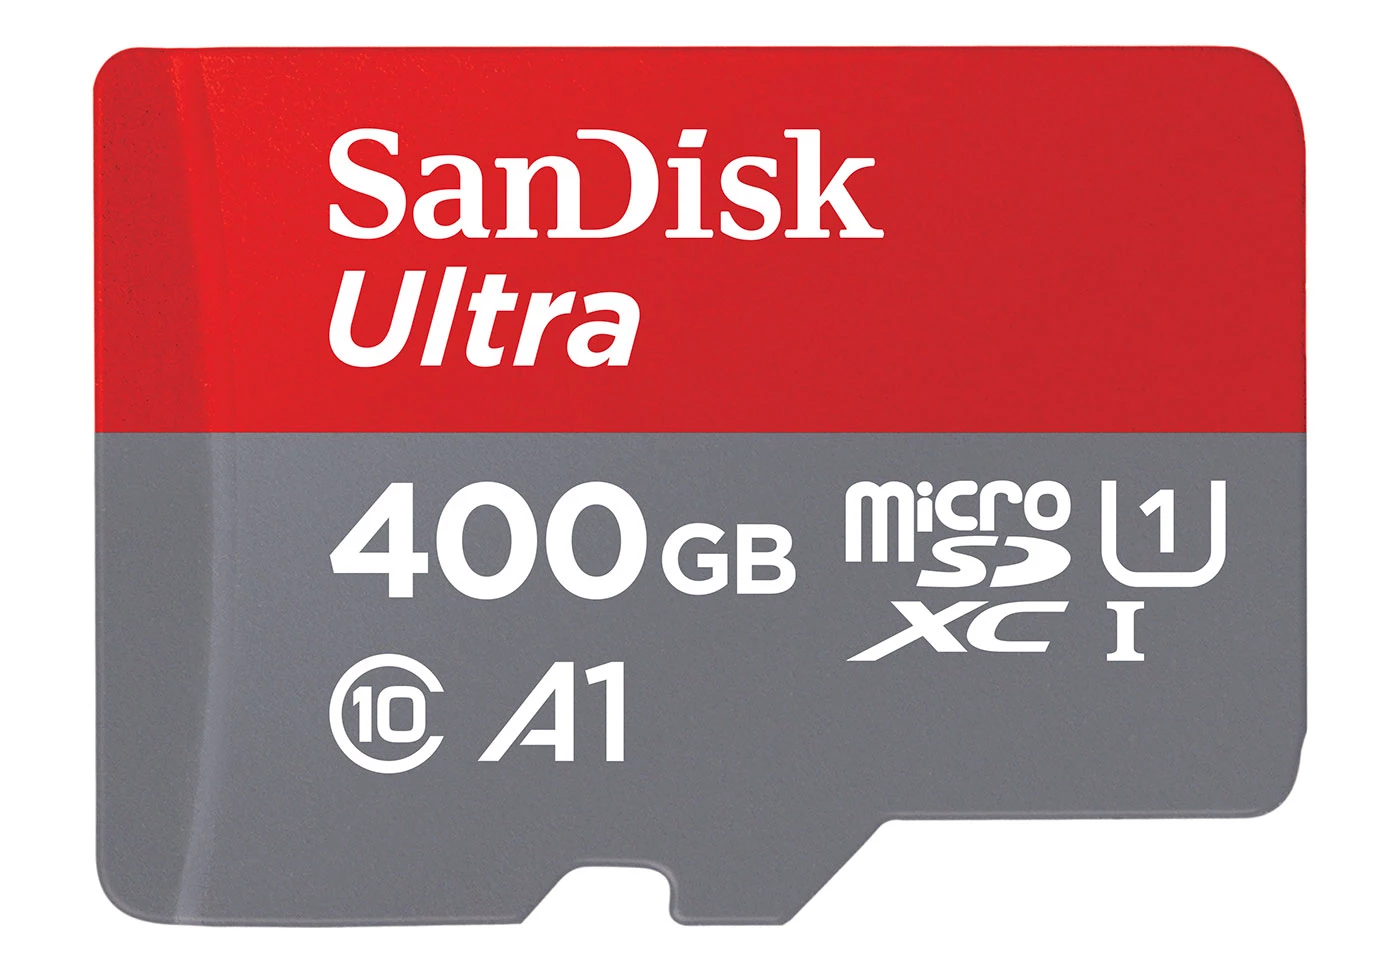 400GB microSD card.